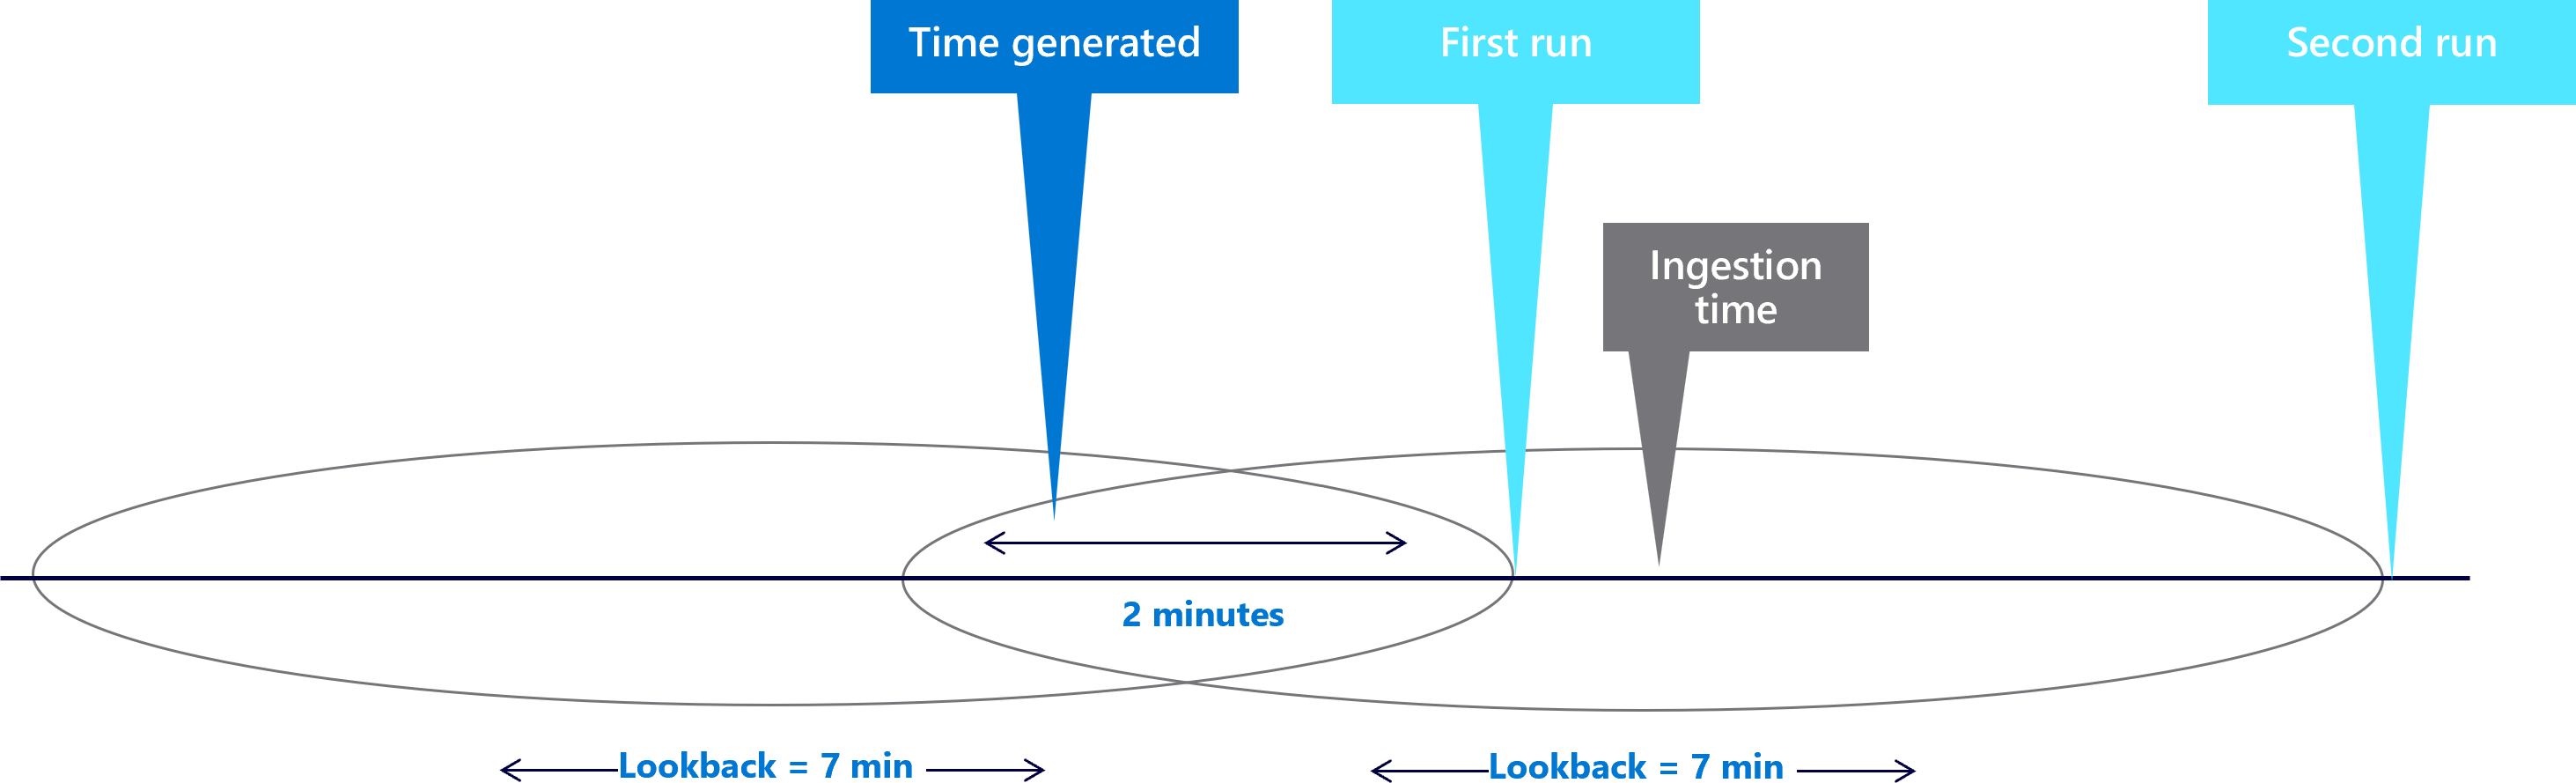 Diagramme montrant des fenêtres de rétrospection de sept minutes avec un délai de deux minutes.